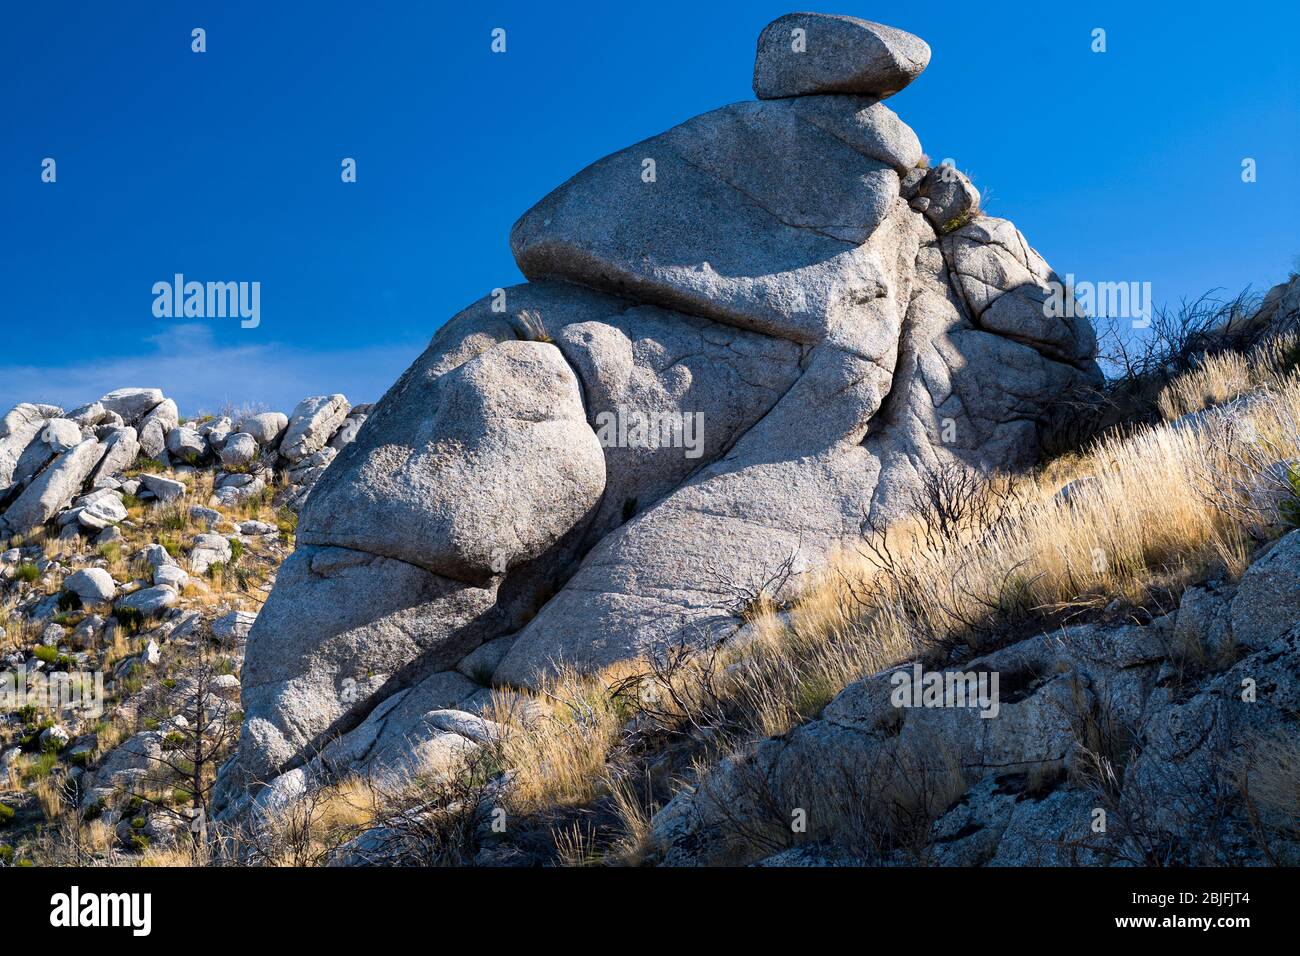 Sierra da Estrela en el Parque Natural. Las rocas de la época de la época glacial forman interesantes esculturas. Foto de stock